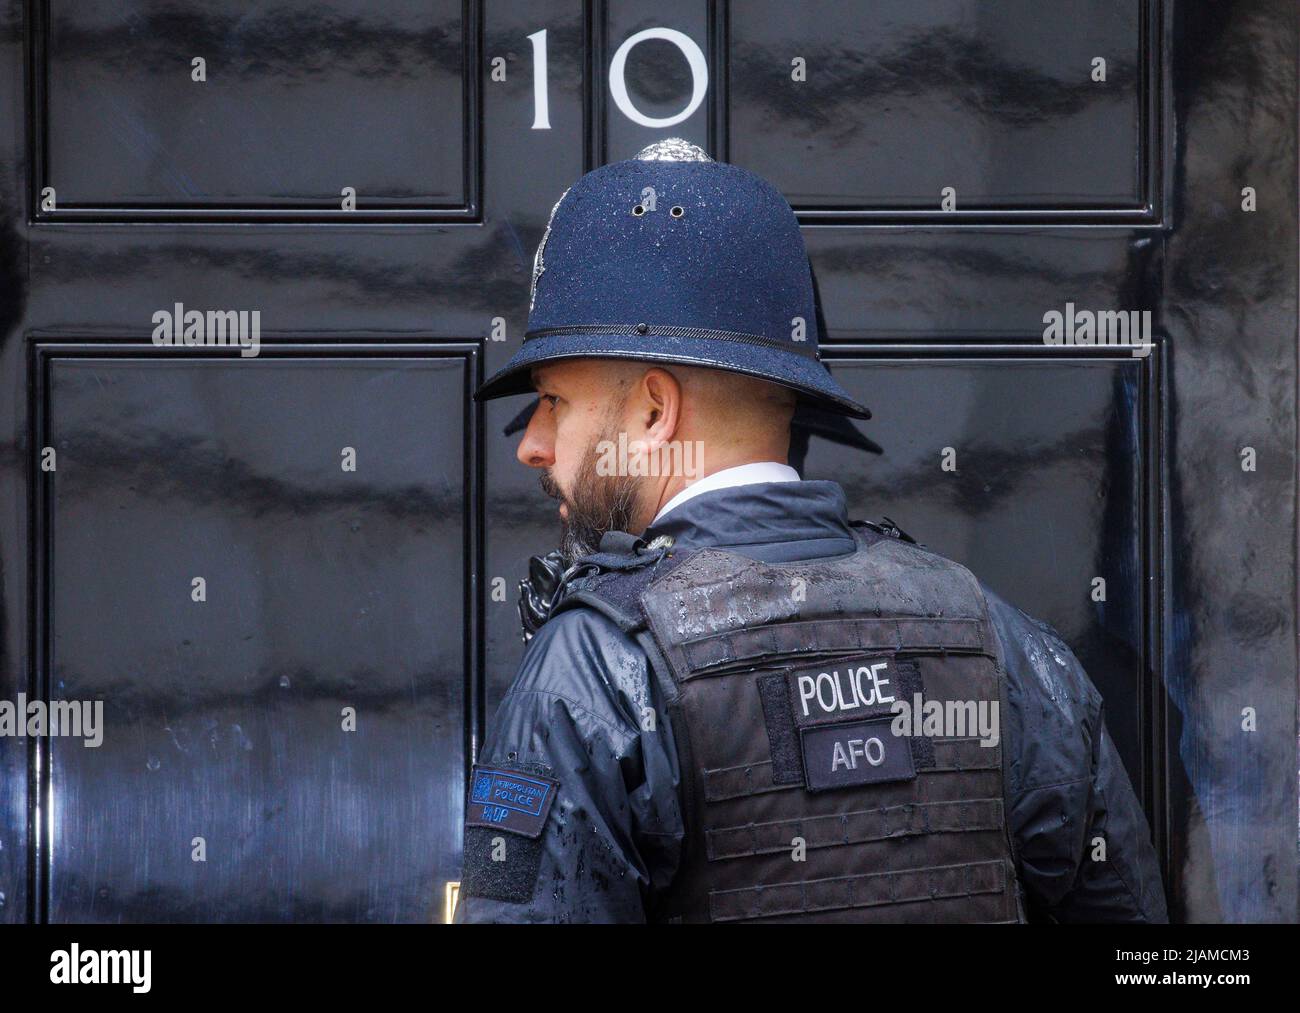 Polizist an der Tür von Nummer 10. Die Metropolitan Police hat unter Nummer 10 mutmaßliche Parteien untersucht und Feststrafen verhängt. Stockfoto